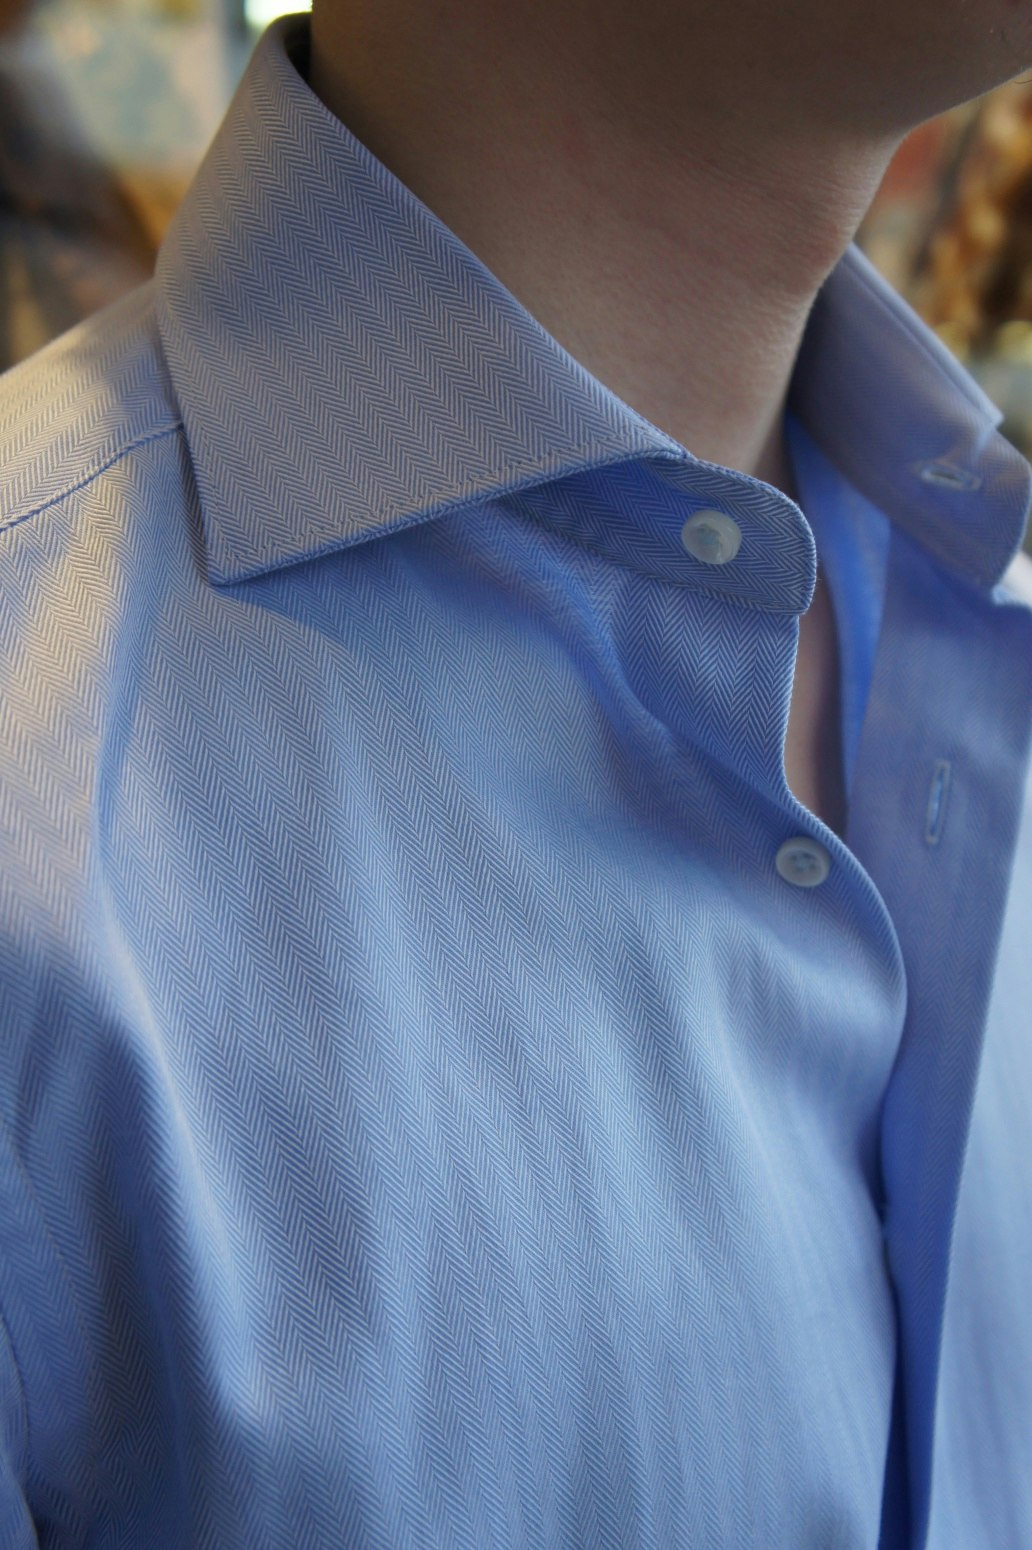 Enfärgad Fiskbensmönstrad Twillskjorta med cutaway -krage - Ljusblå